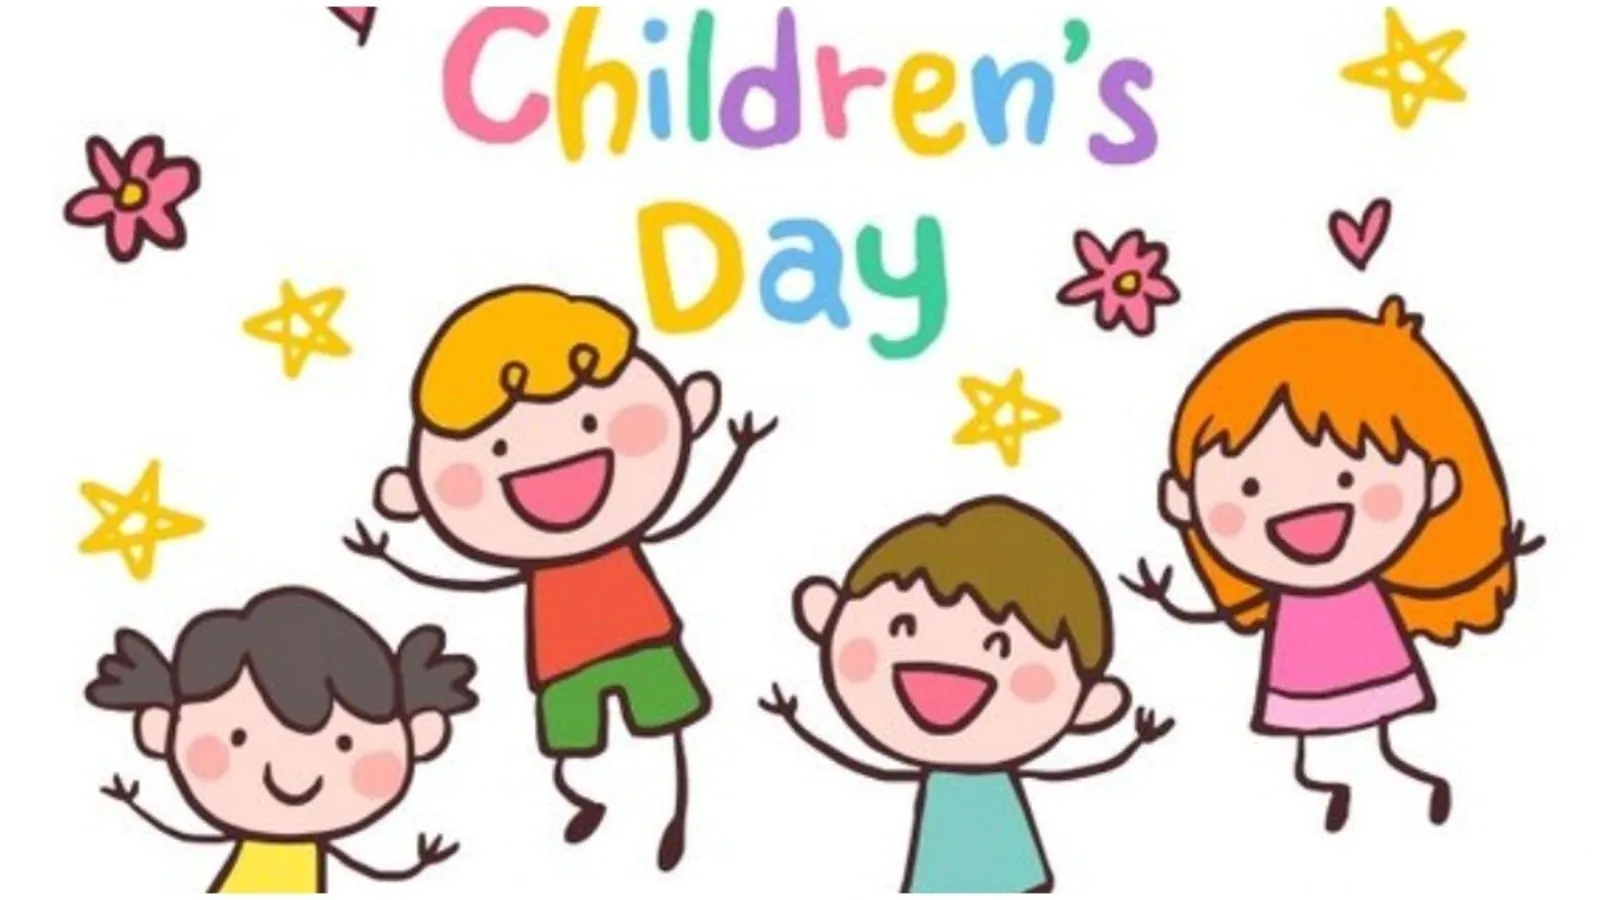 Children's Day Slogan in Hindi